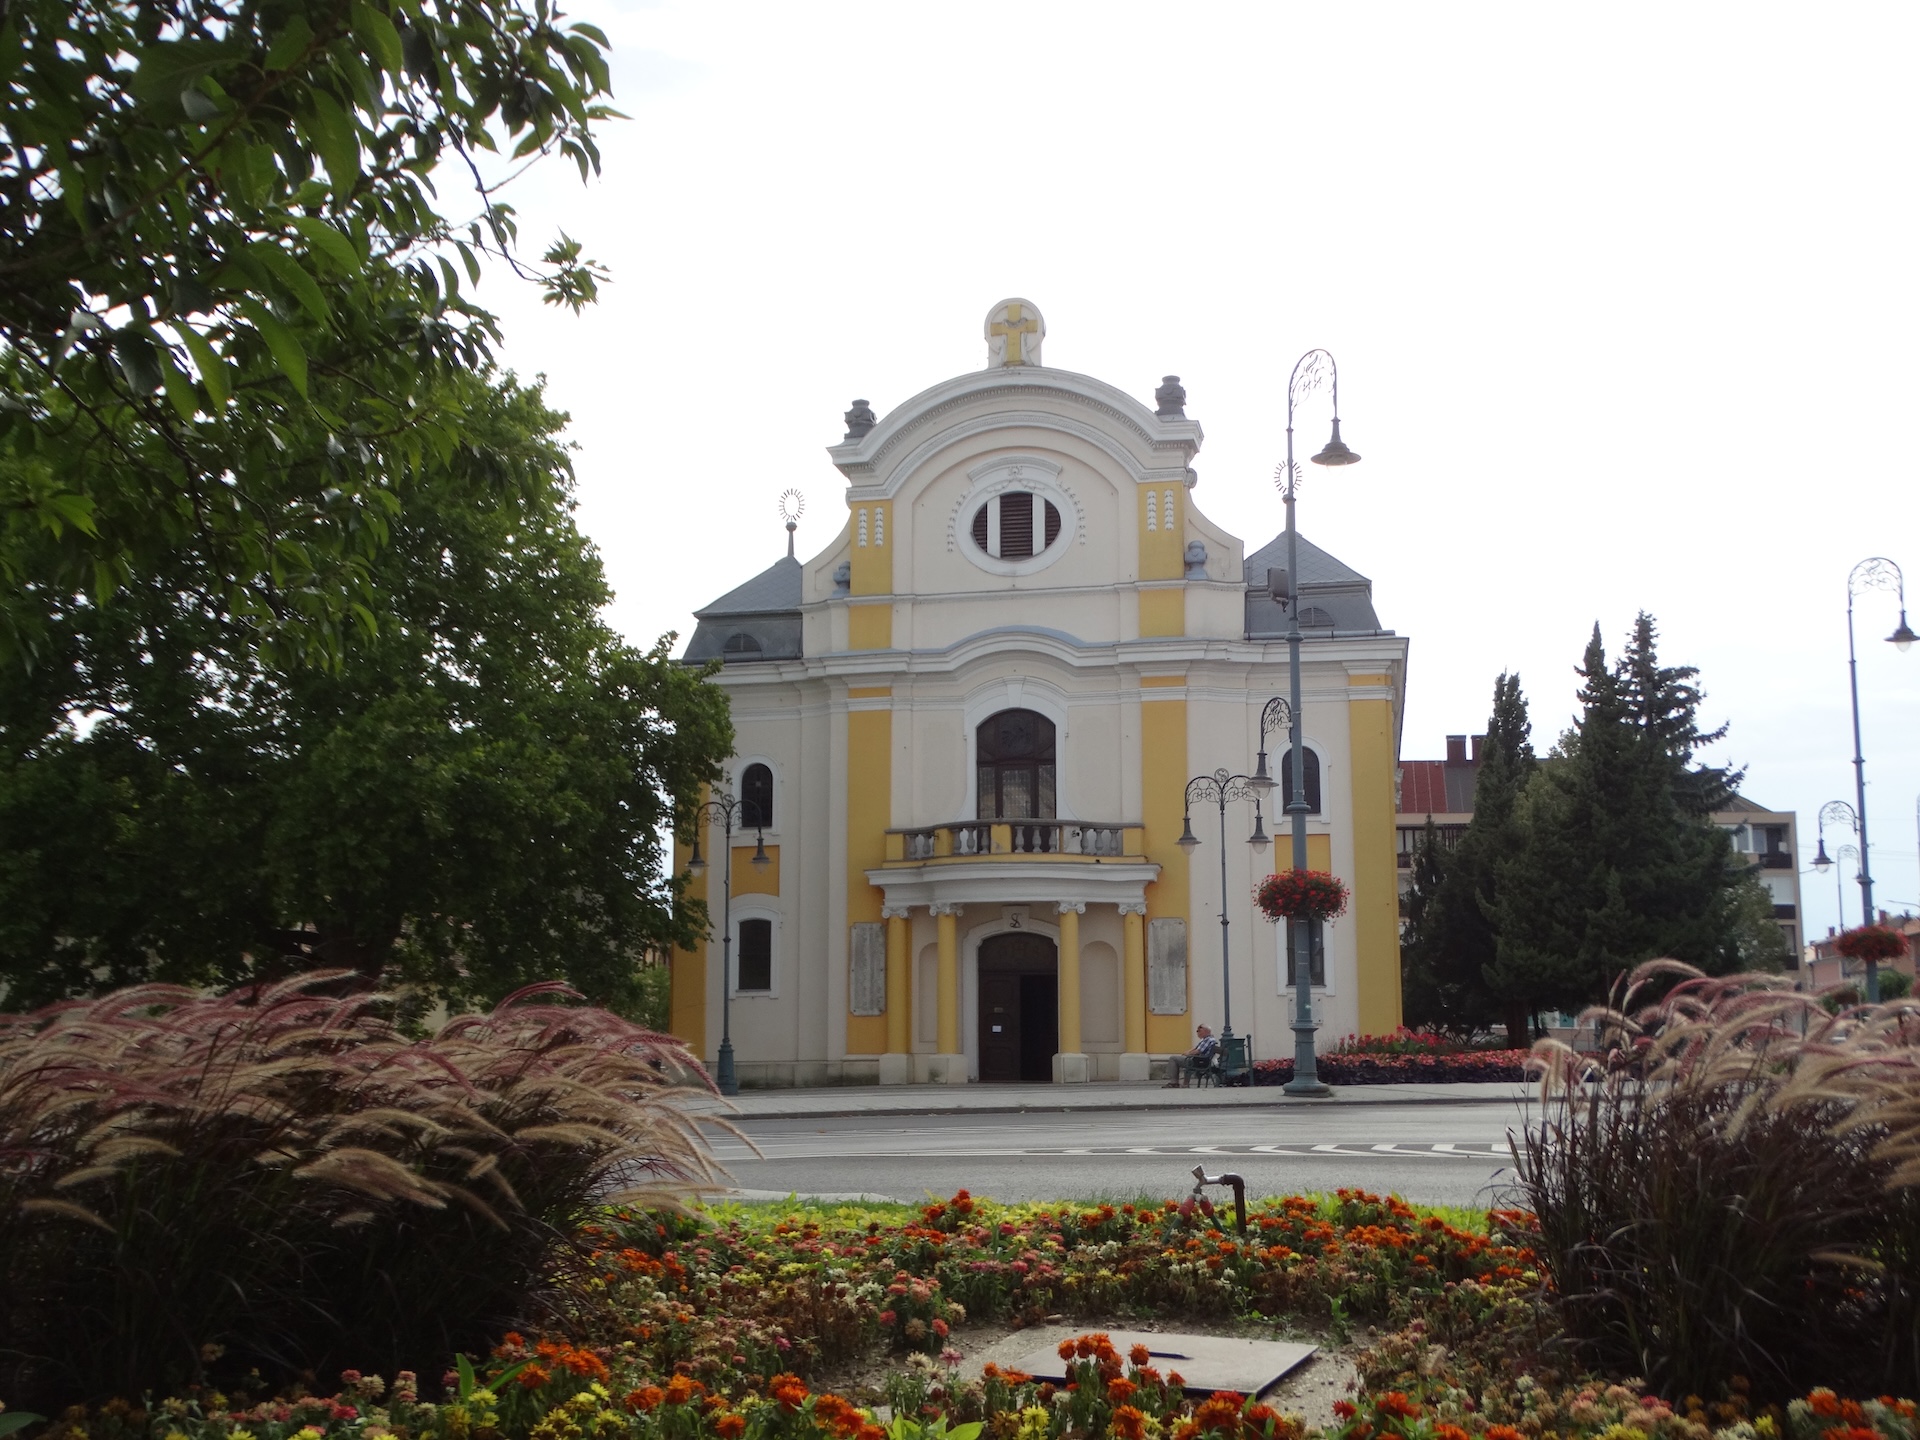 St. Vladislav Church in Sárvár